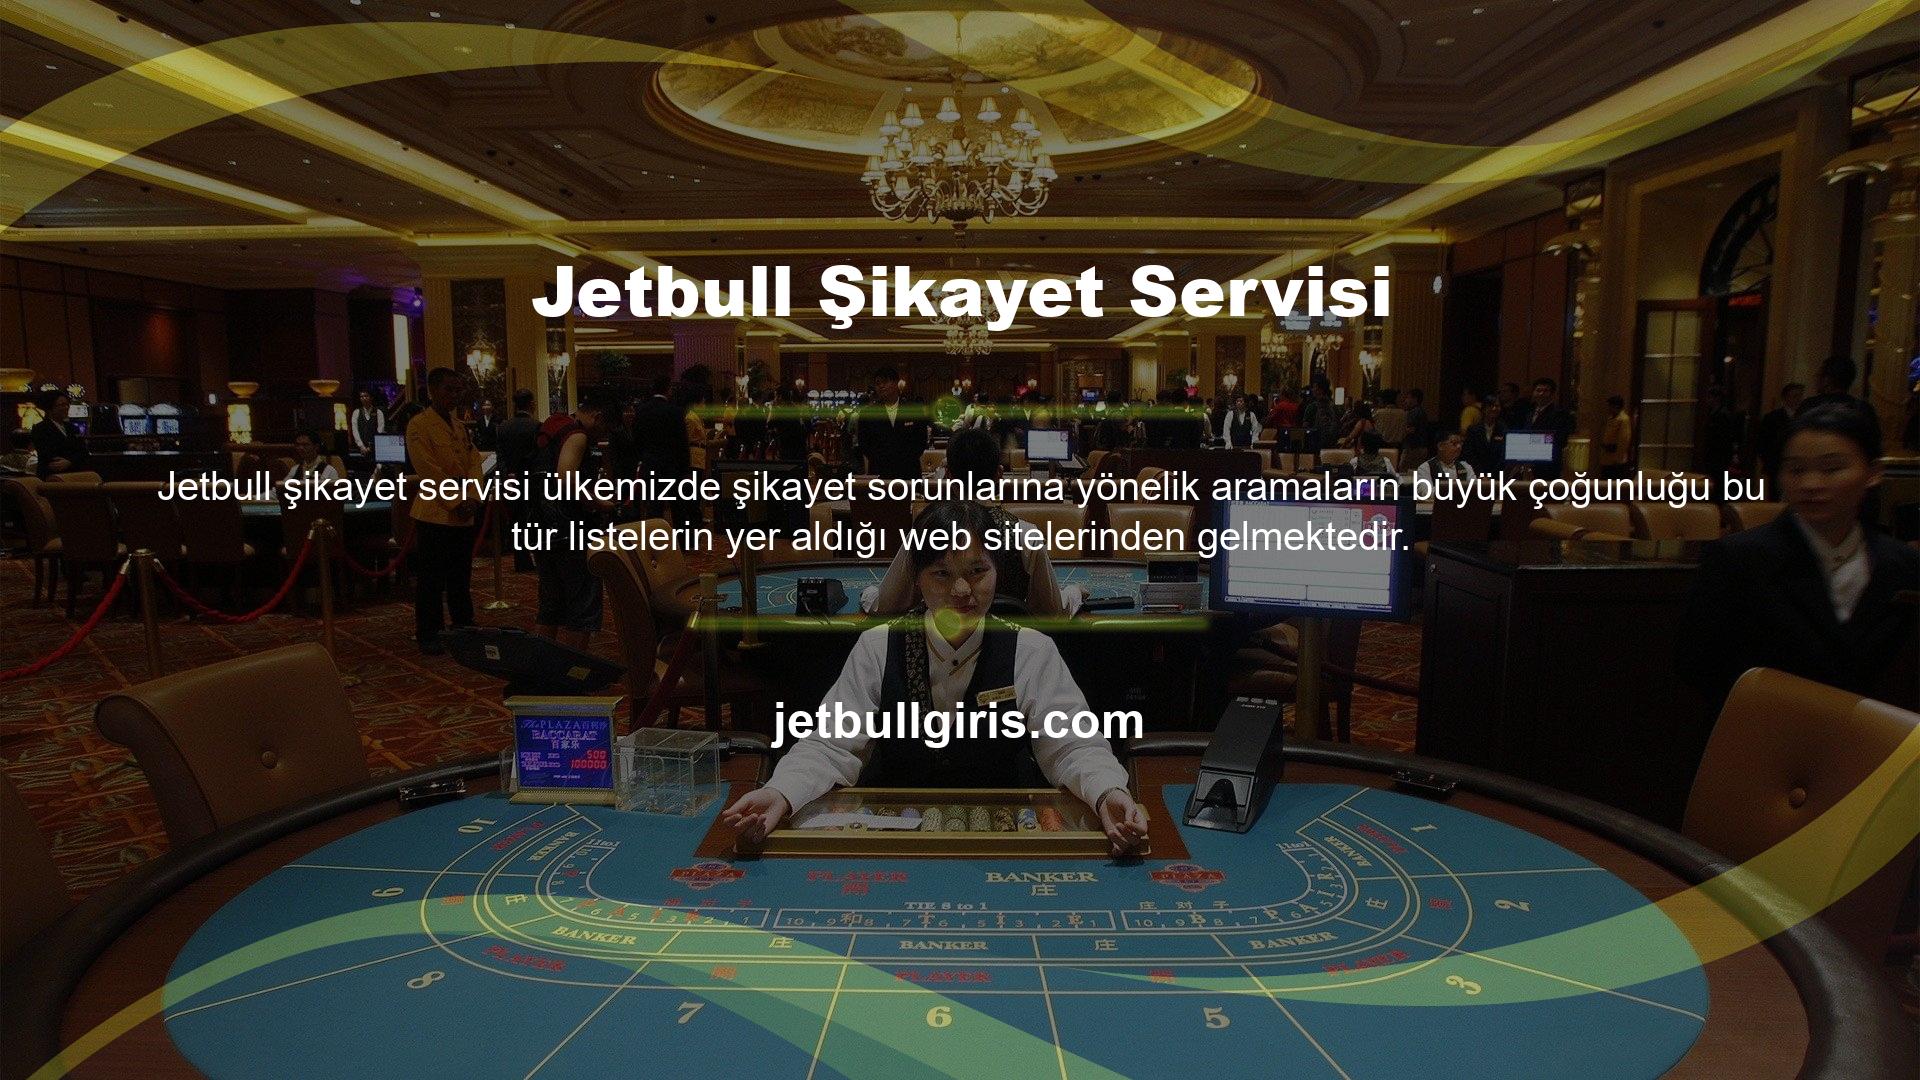 Jetbull özel sayfalarında aldığı şikayetlerin sayısı Türk casino pazarı ortalamasının altında